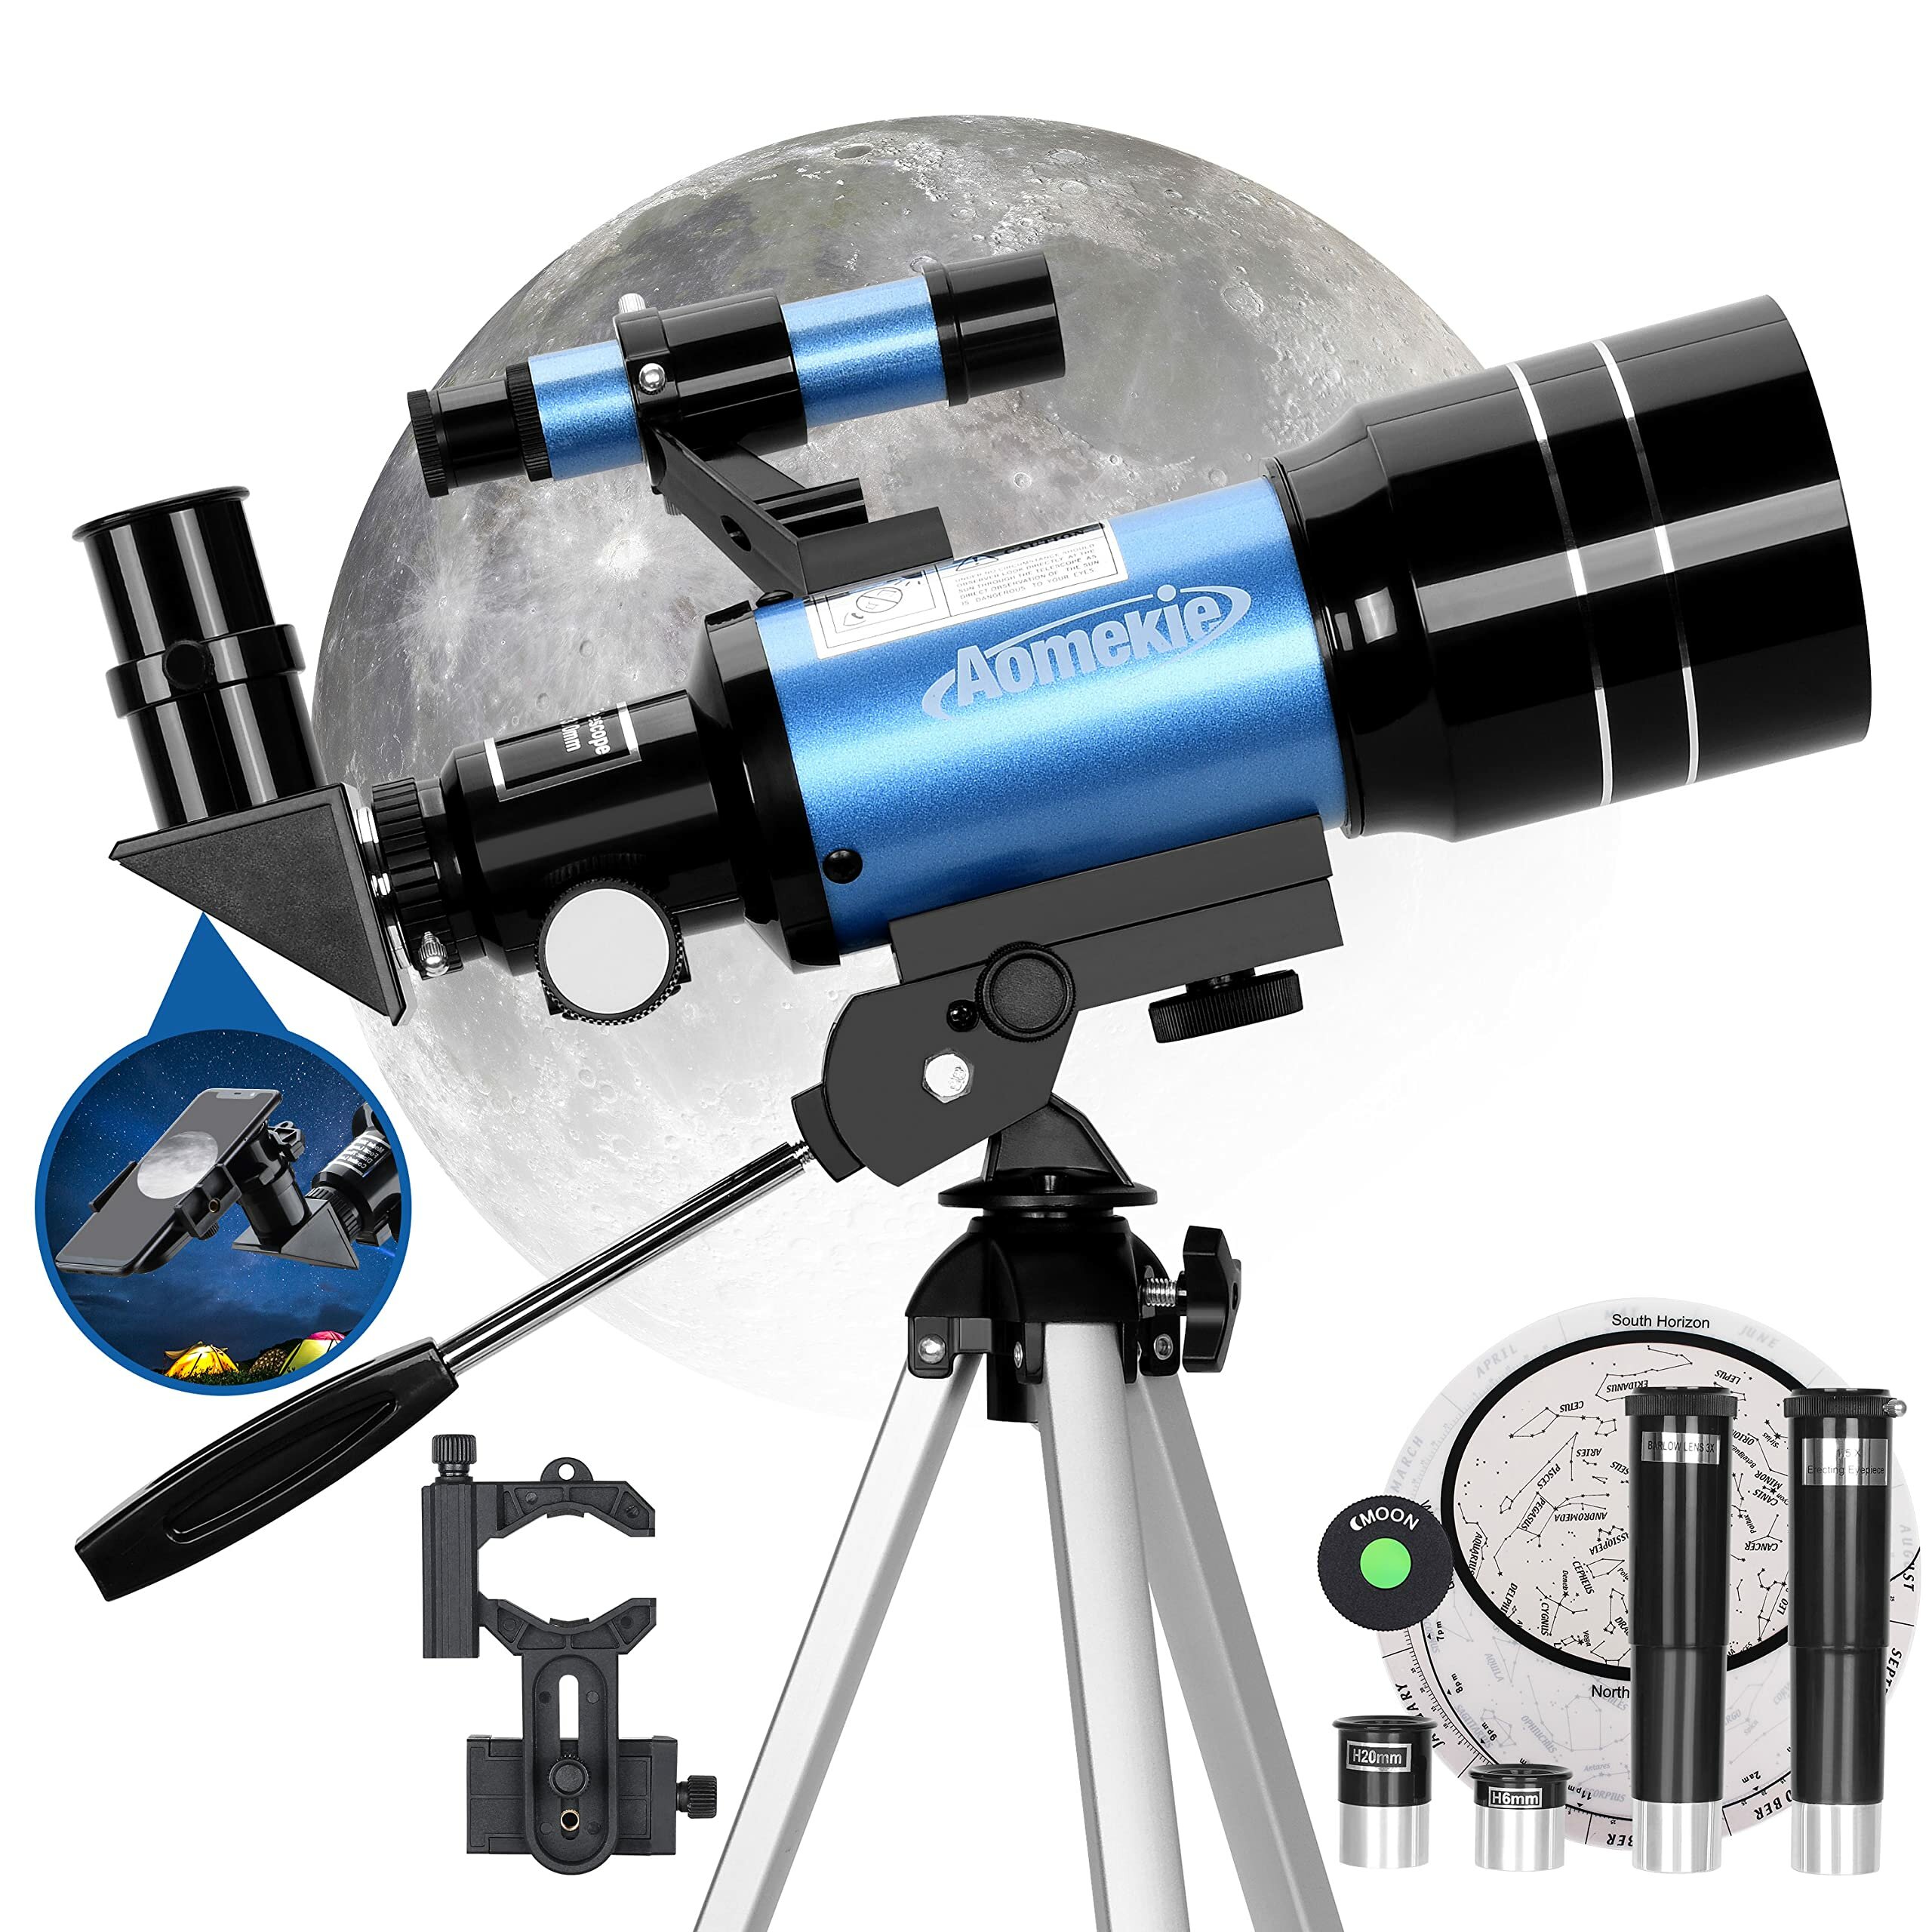 [EU Közvetlen] AOMEKIE AO2001 70 mm-es csillagászati távcső gyerekeknek 150X Erőteljes csillagászati távcső okostelefon adapterrel,állvánnyal,Barlow lencsével és kezdőknek való keresővel